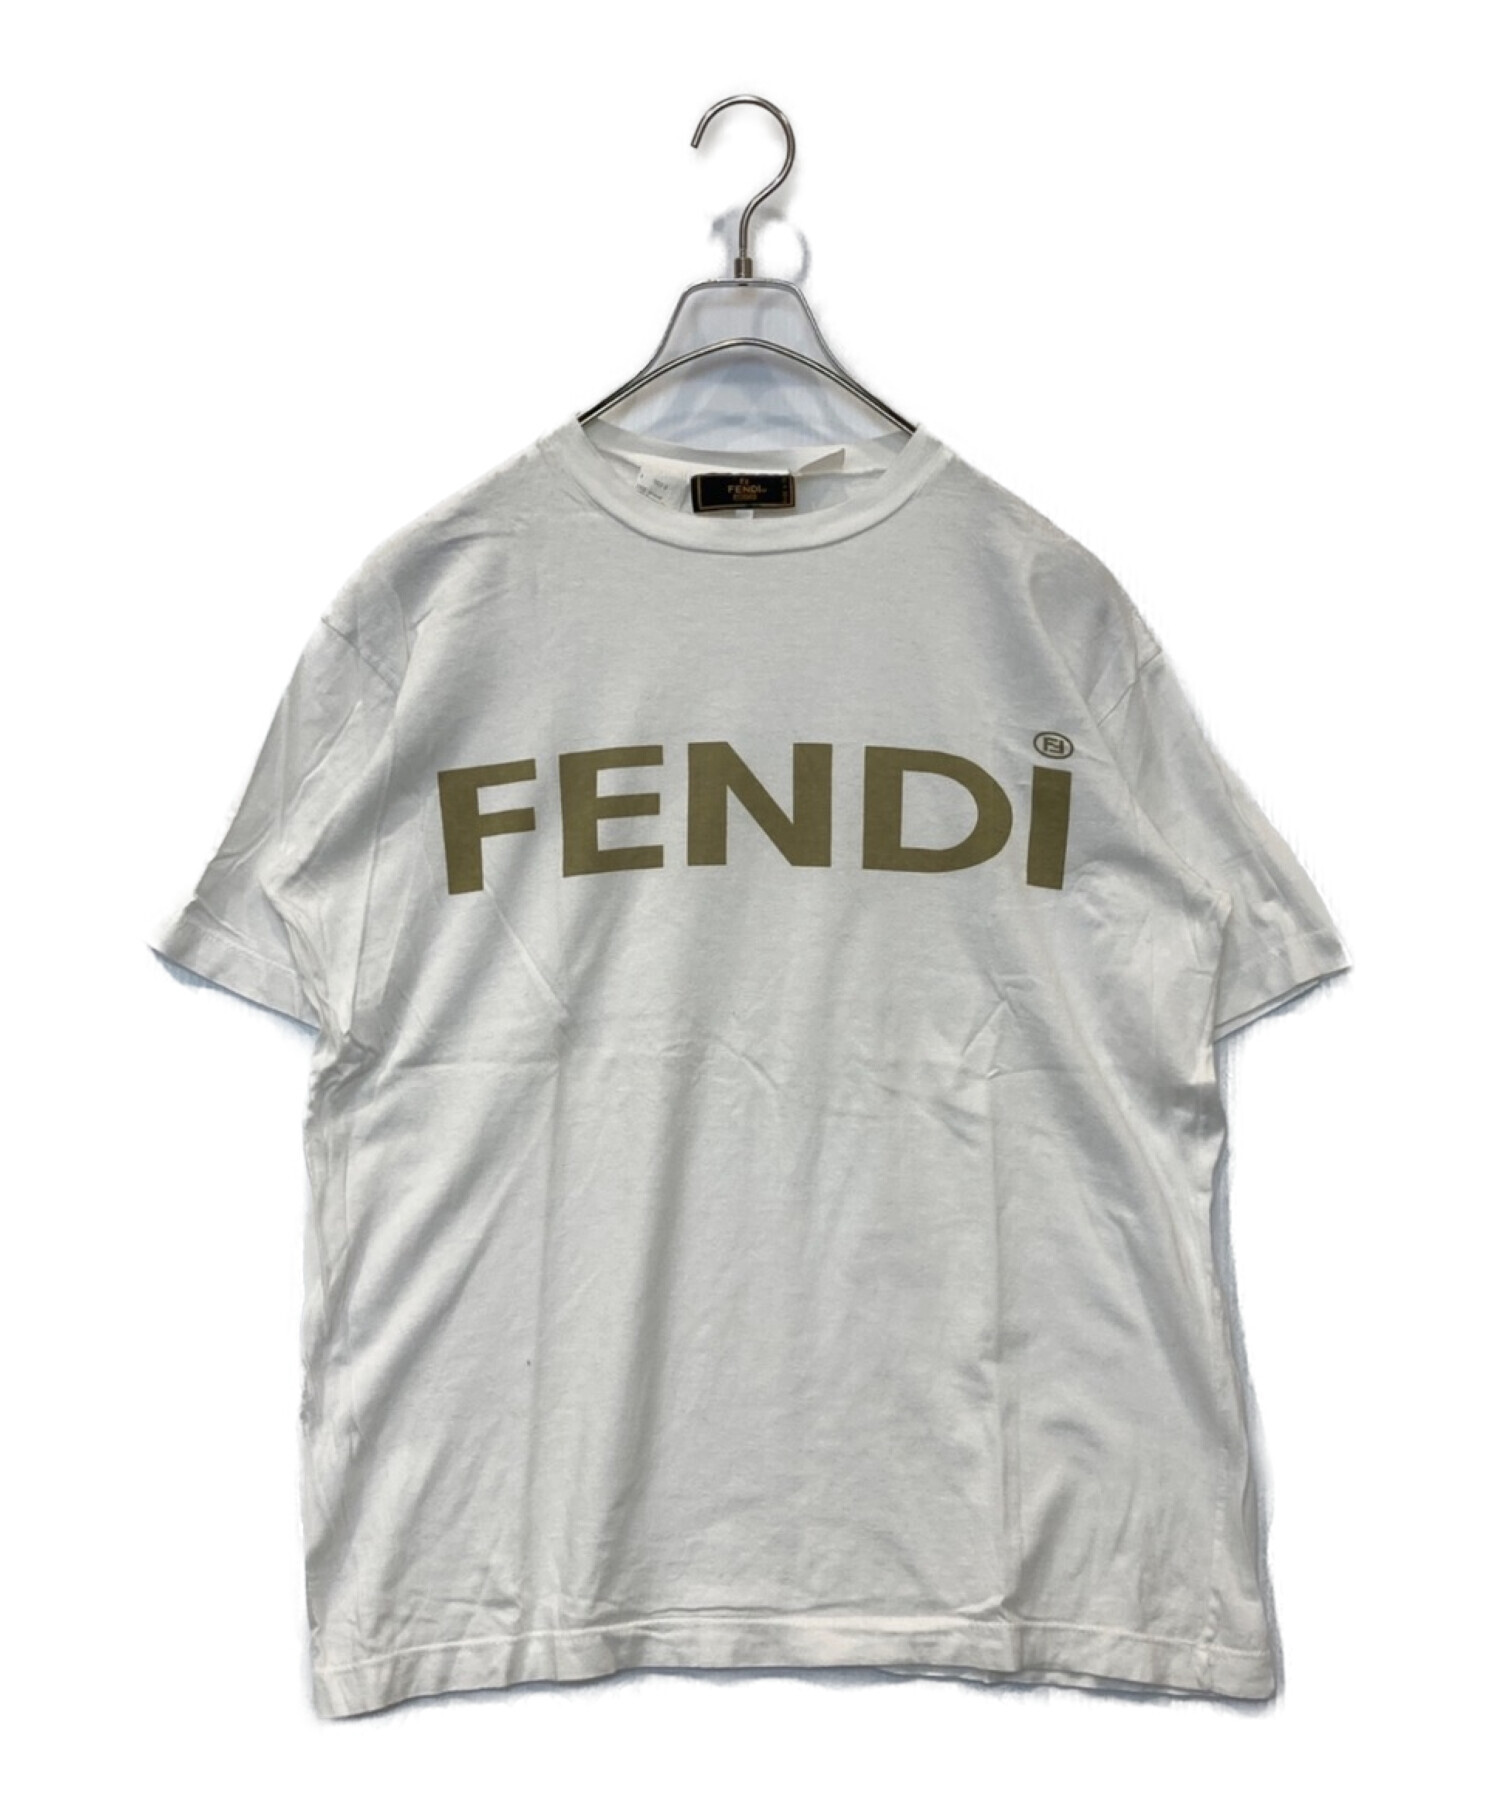 Camisa Camiseta Fendi Logo Grande - Ofertas Relâmpago (40)